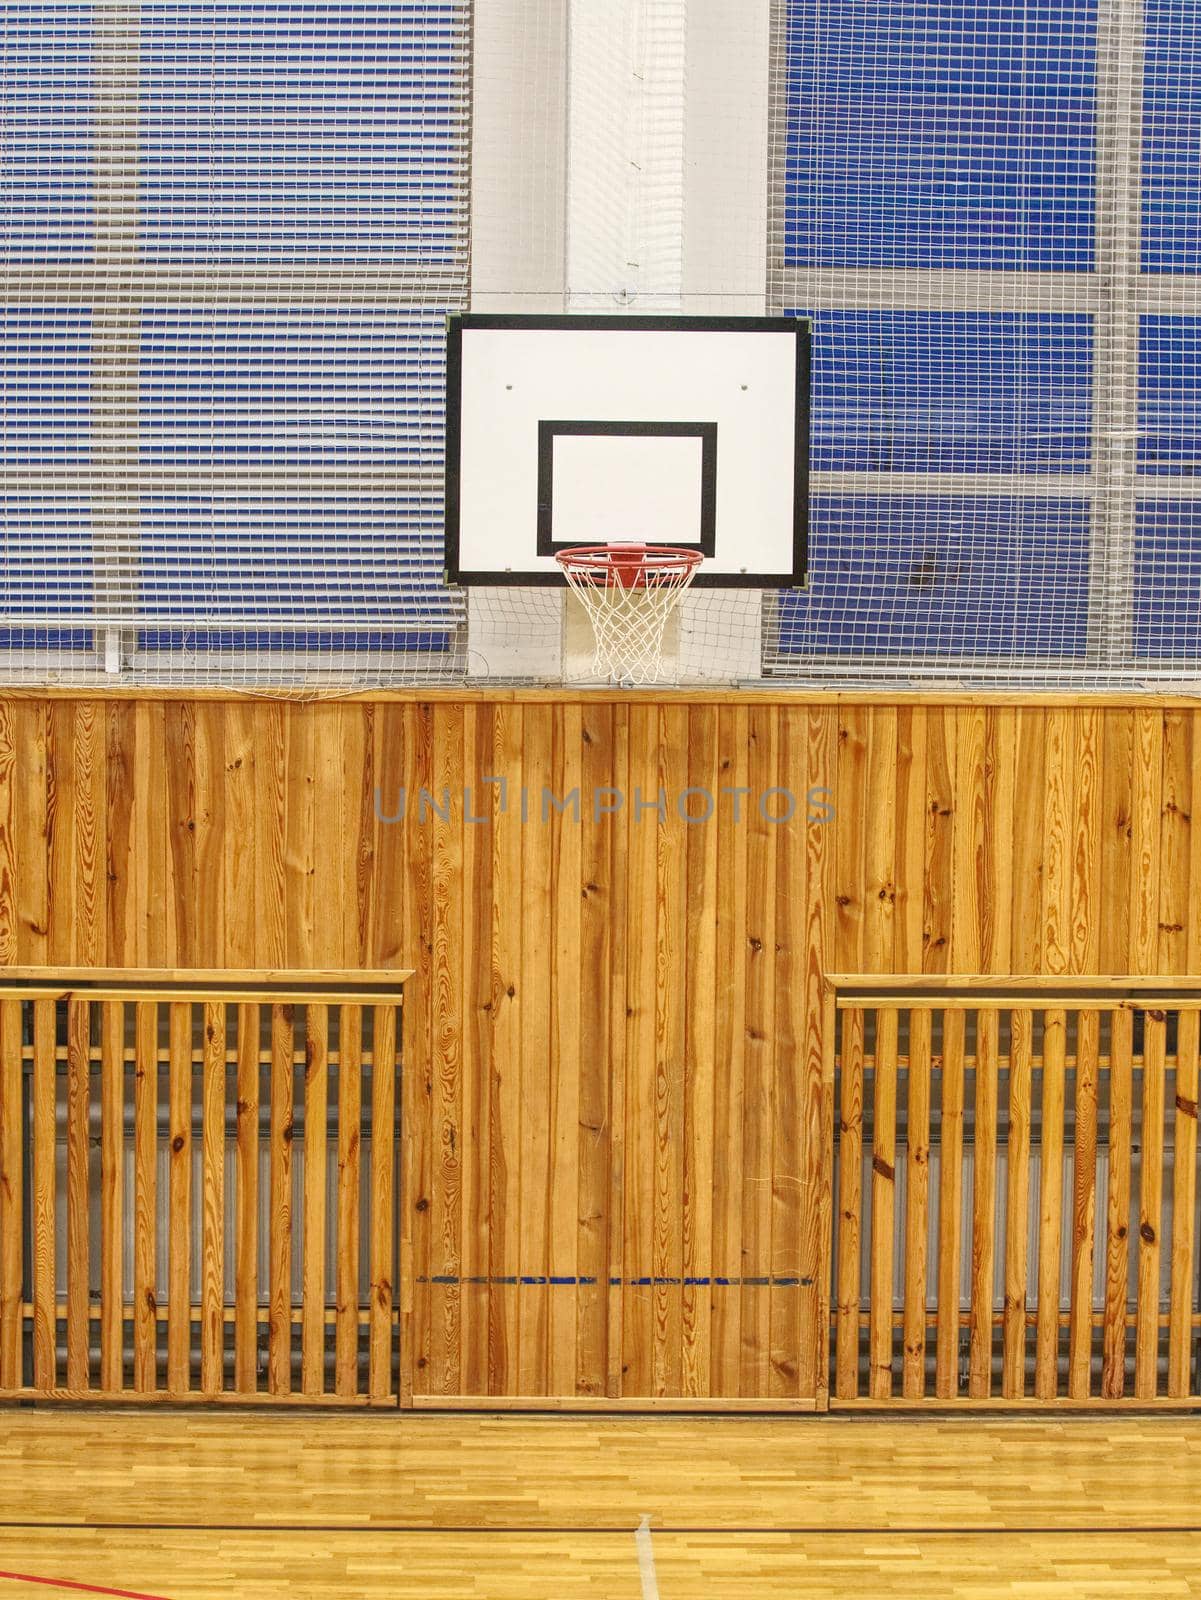 School gym with basketball basket board by rdonar2